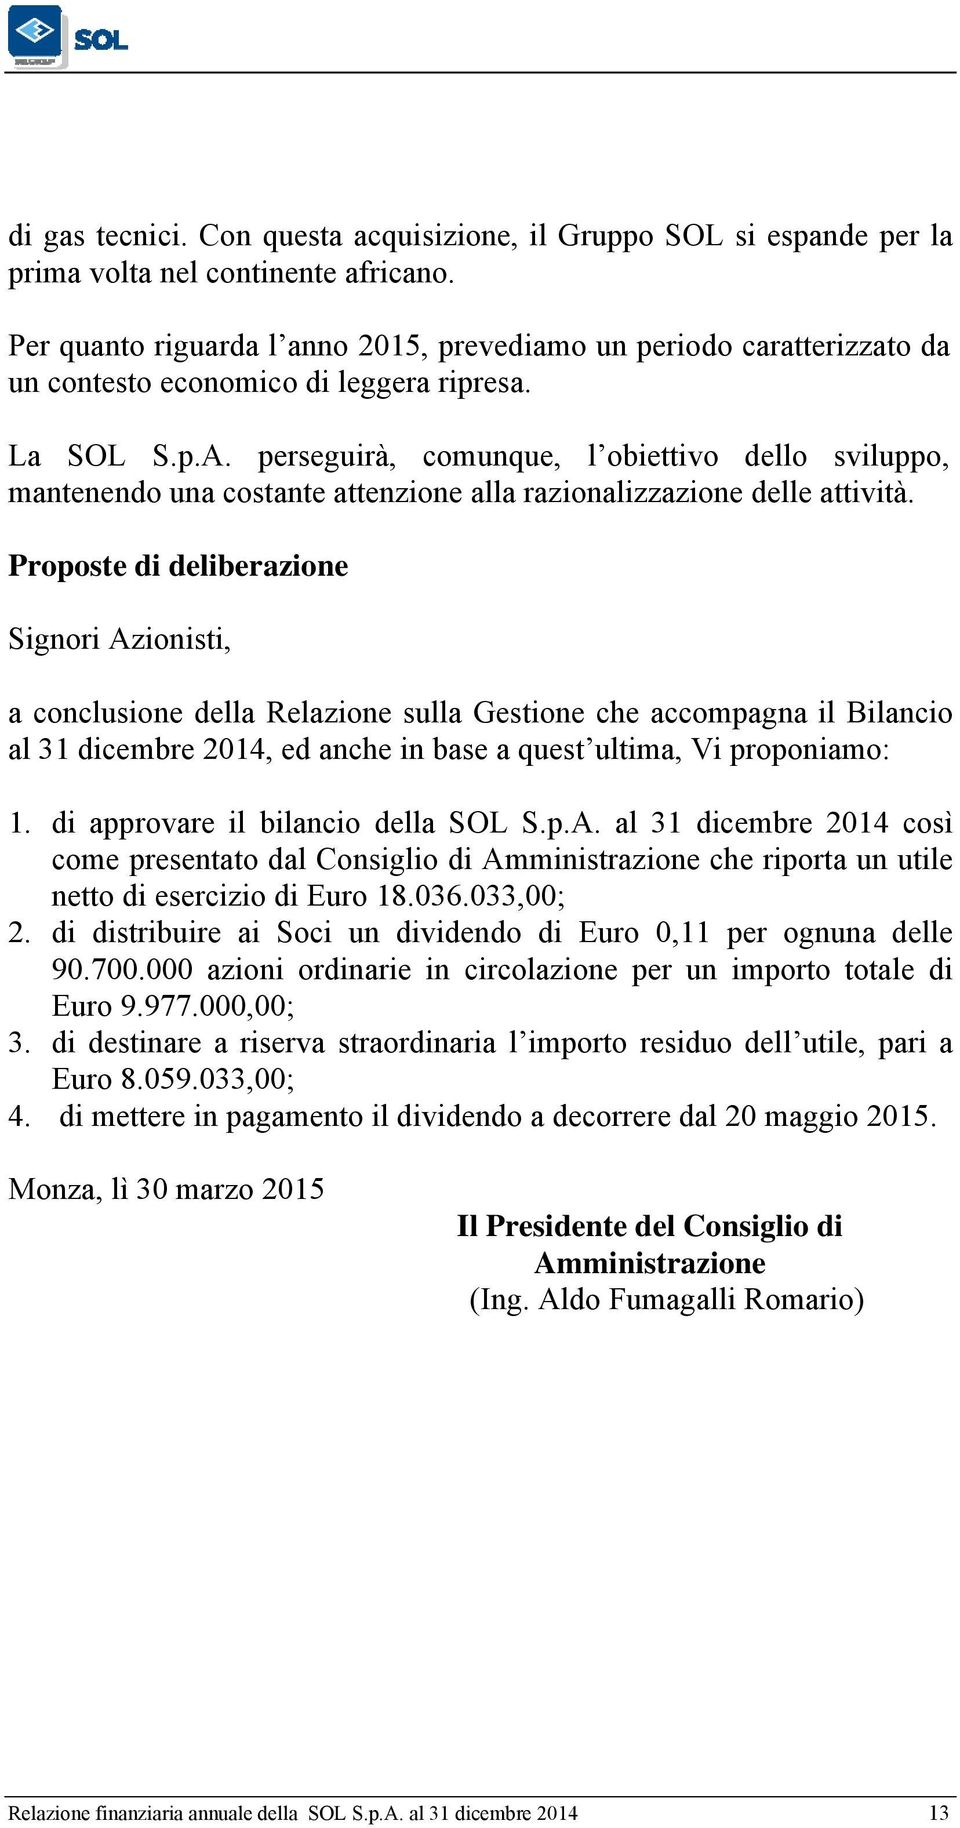 Codice fiscale e numero di iscrizione nel registro delle Imprese di Monza e